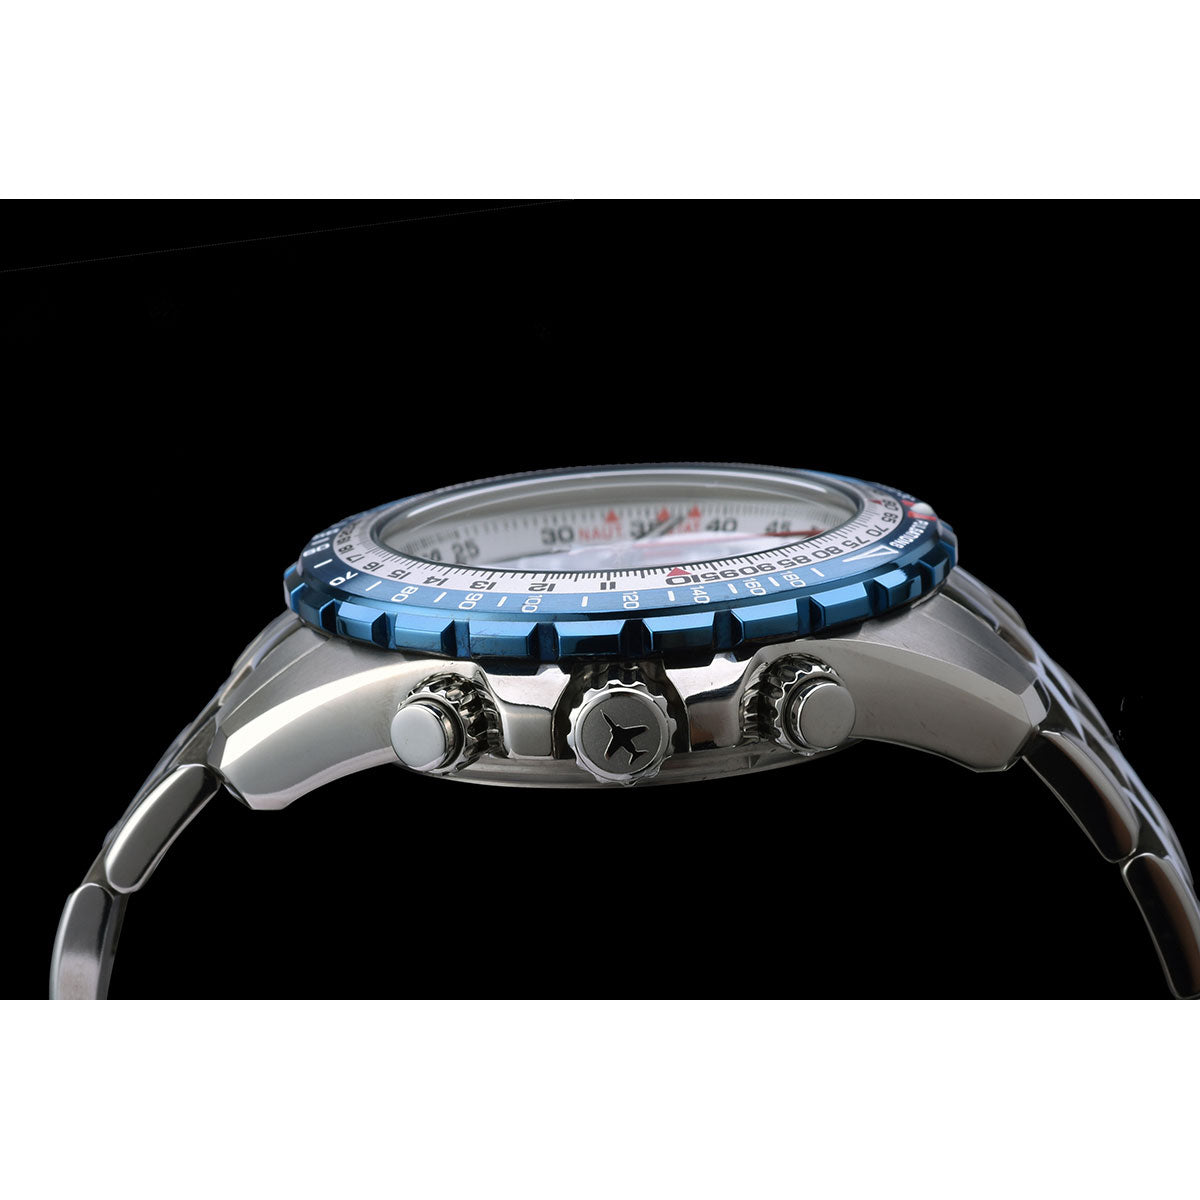 ケンテックス 腕時計 時計 KENTEX ブルーインパルス 日本製 S793M-1 Blue Impulse 60周年 2020個 限定モデル メンズ クロノグラフ 航空自衛隊 回転計算尺 10気圧防水 ネイビー シルバー JSDF チタン